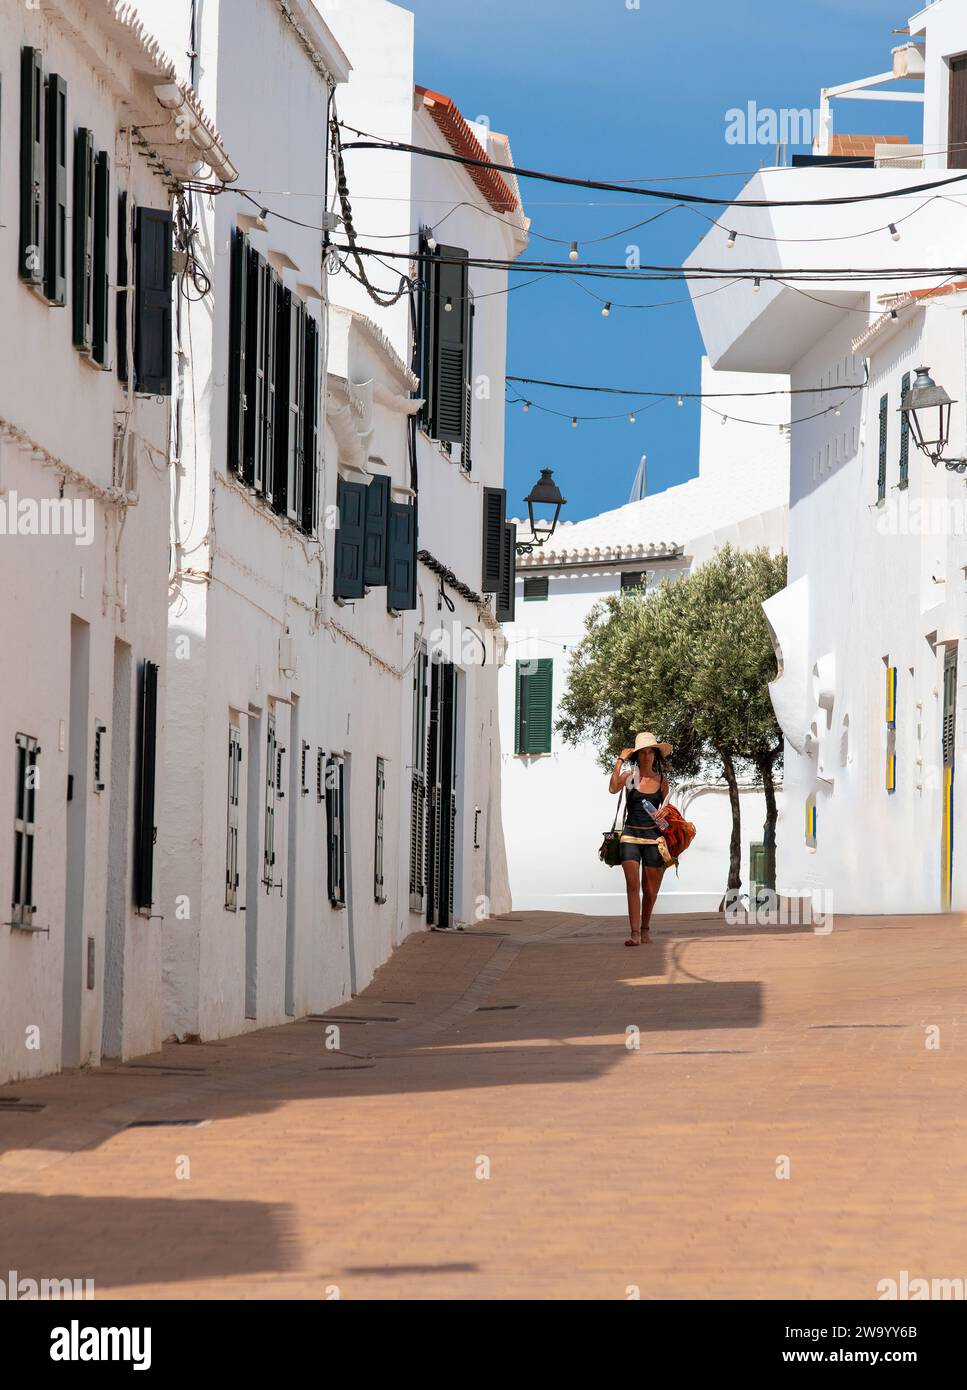 A woman wearing a sun hat walking down a street in Fornells Menorca Spain. Stock Photo